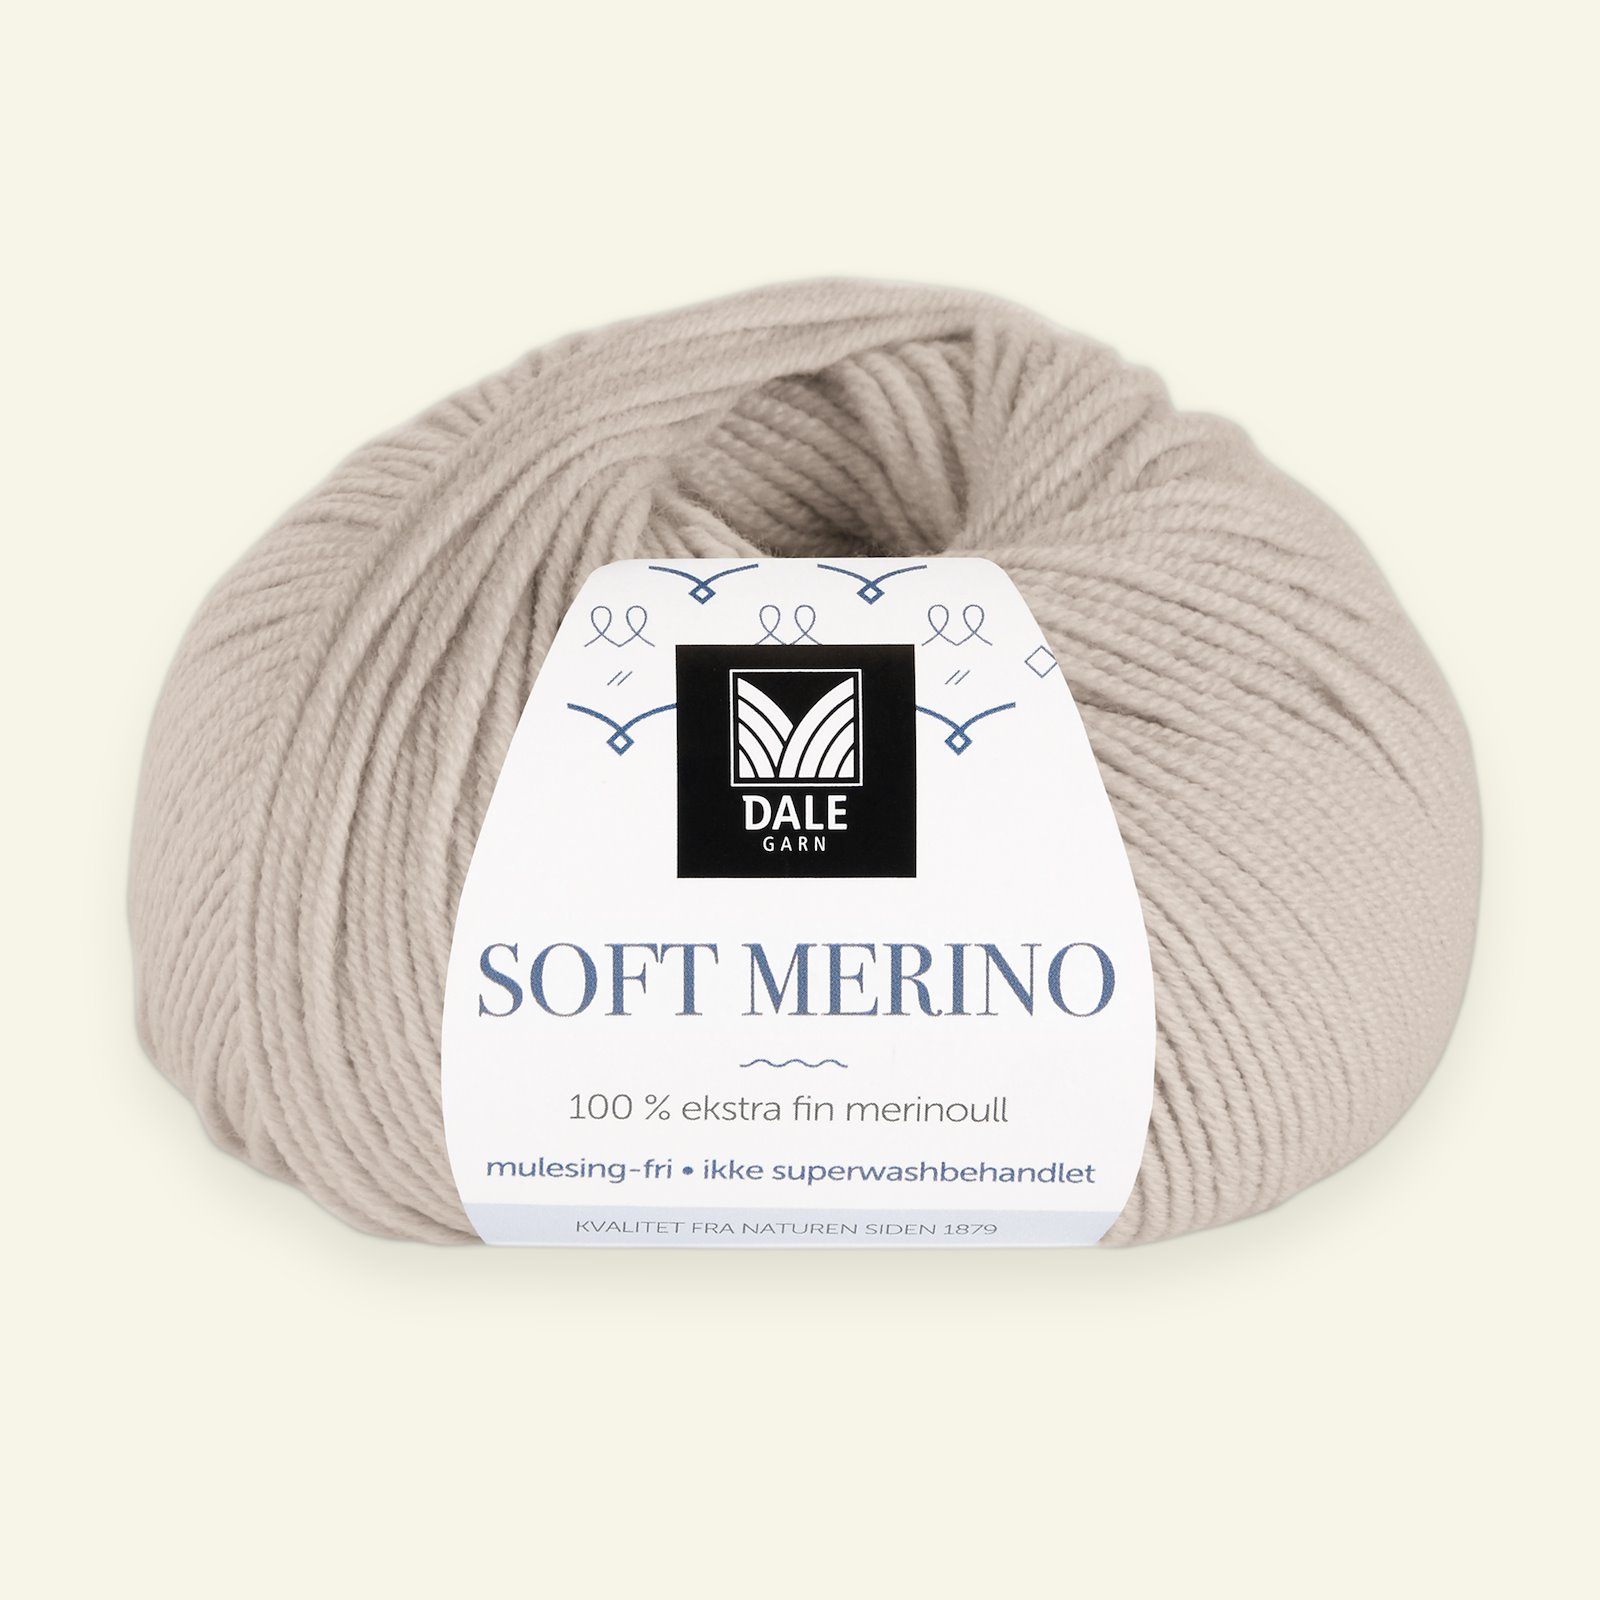 Dale Garn, 100% Extrafeine Merino-Wolle "Soft Merino", sand (3006) 90000327_pack